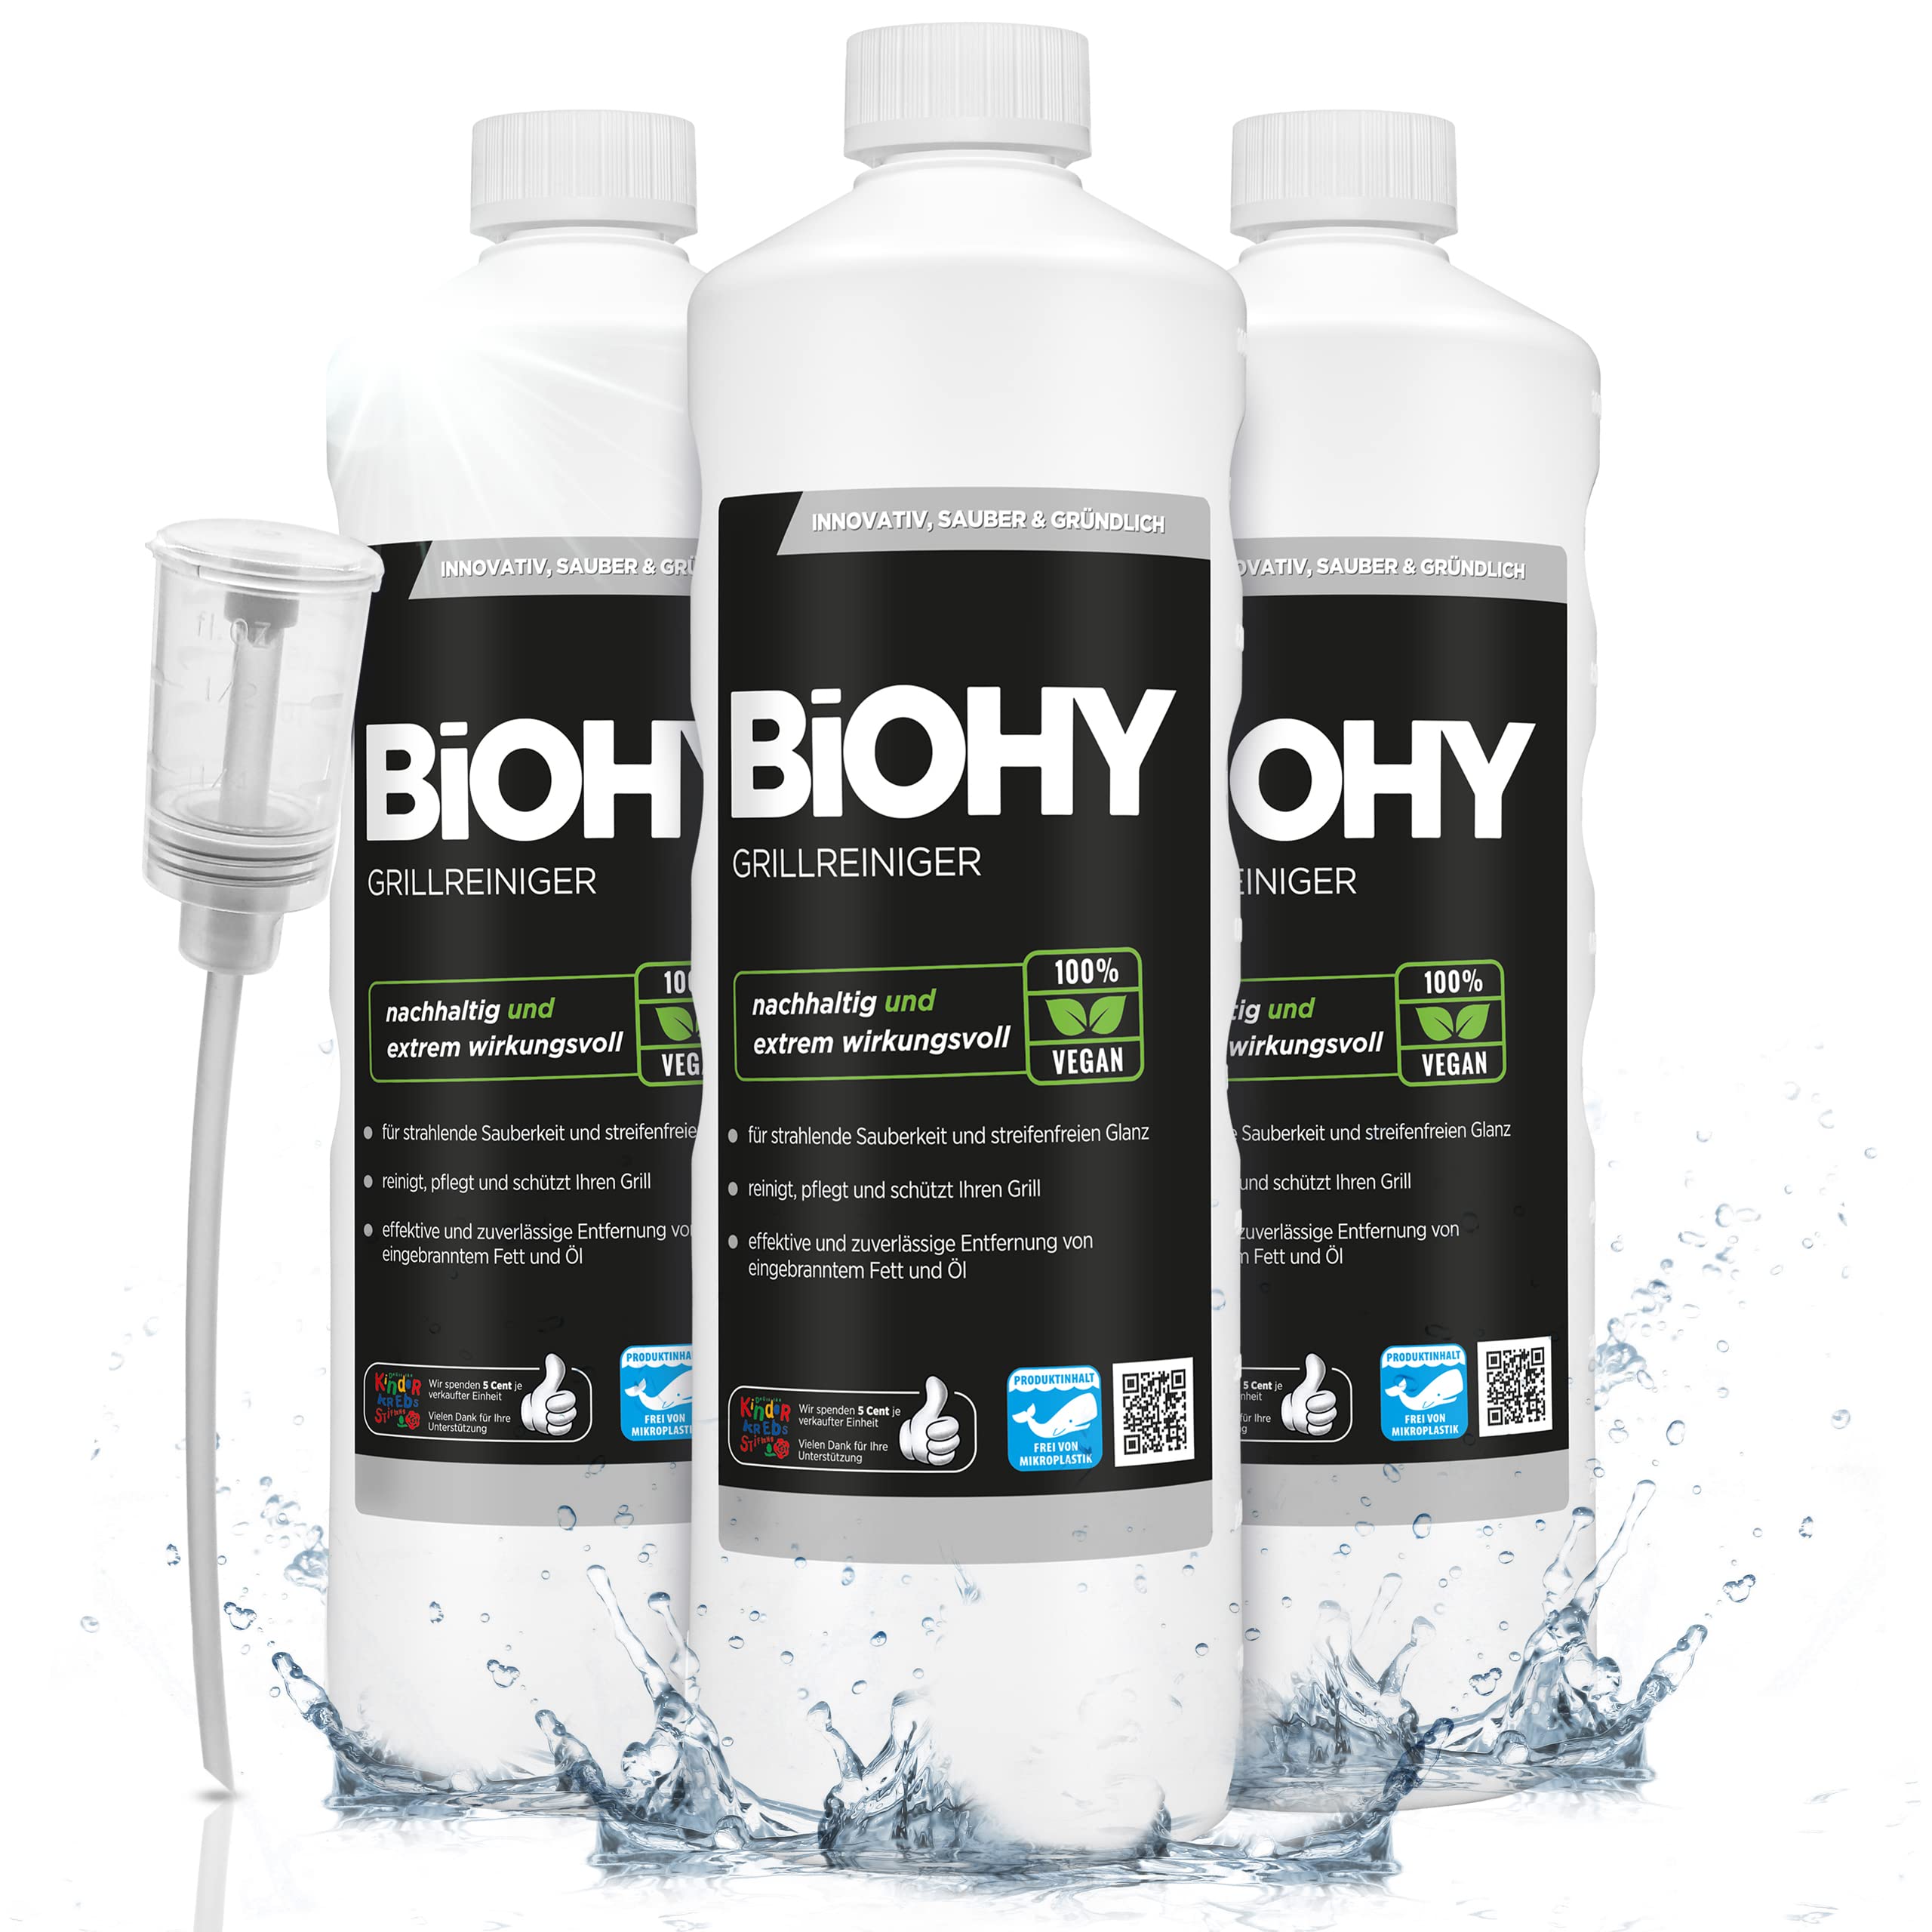 BiOHY Grillreiniger (3 x 1 Liter) + Dosierer | Reiniger für Holzkohle-, Gas- und Elektrogrill | Hocheffektiv gegen angebranntes Fett und Öl | Pflegt und schont das Material | Veganes Bio Konzentrat